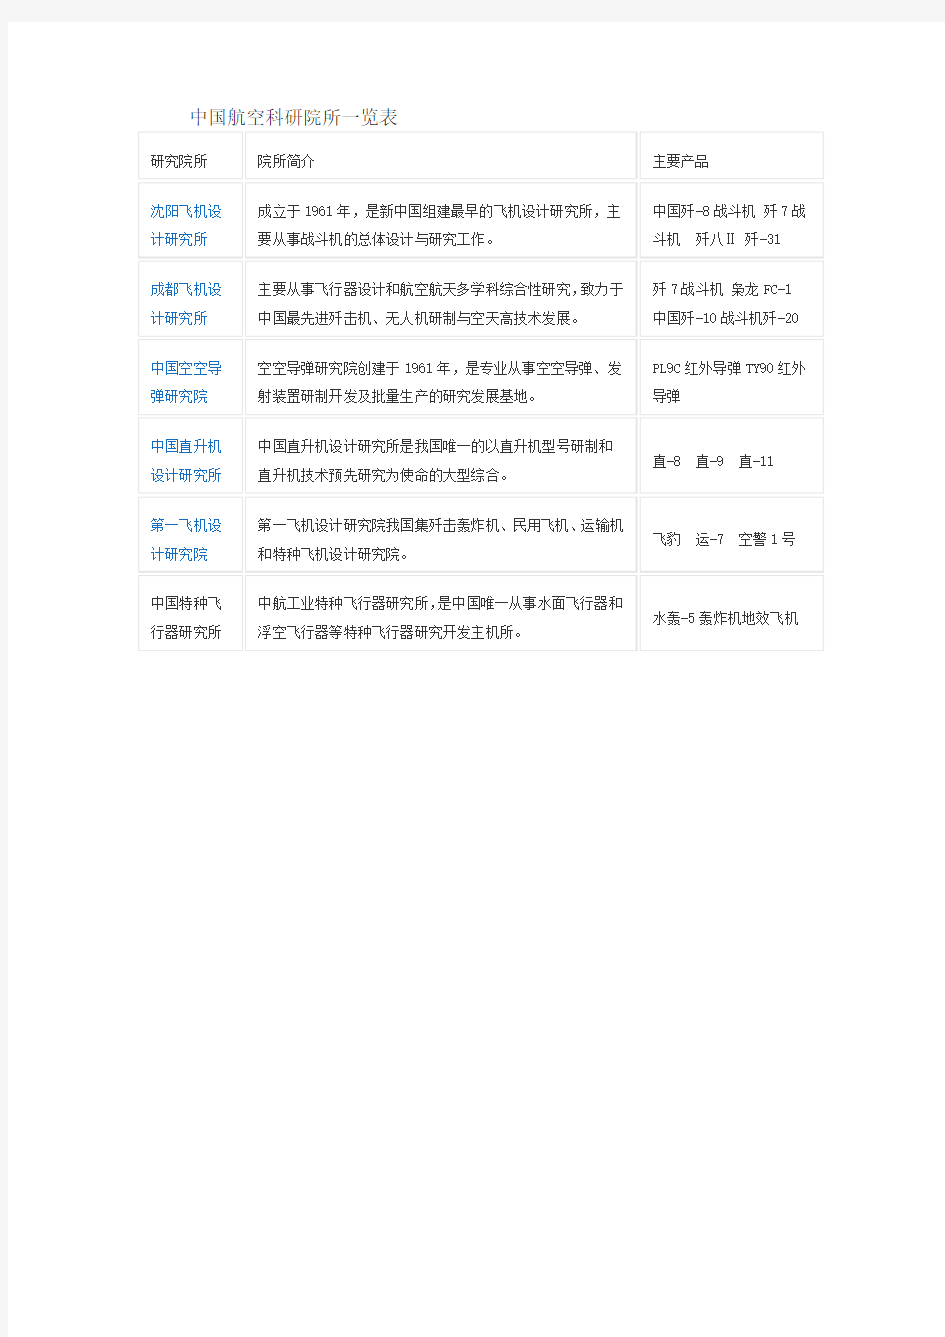 中国航空科研院所一览表